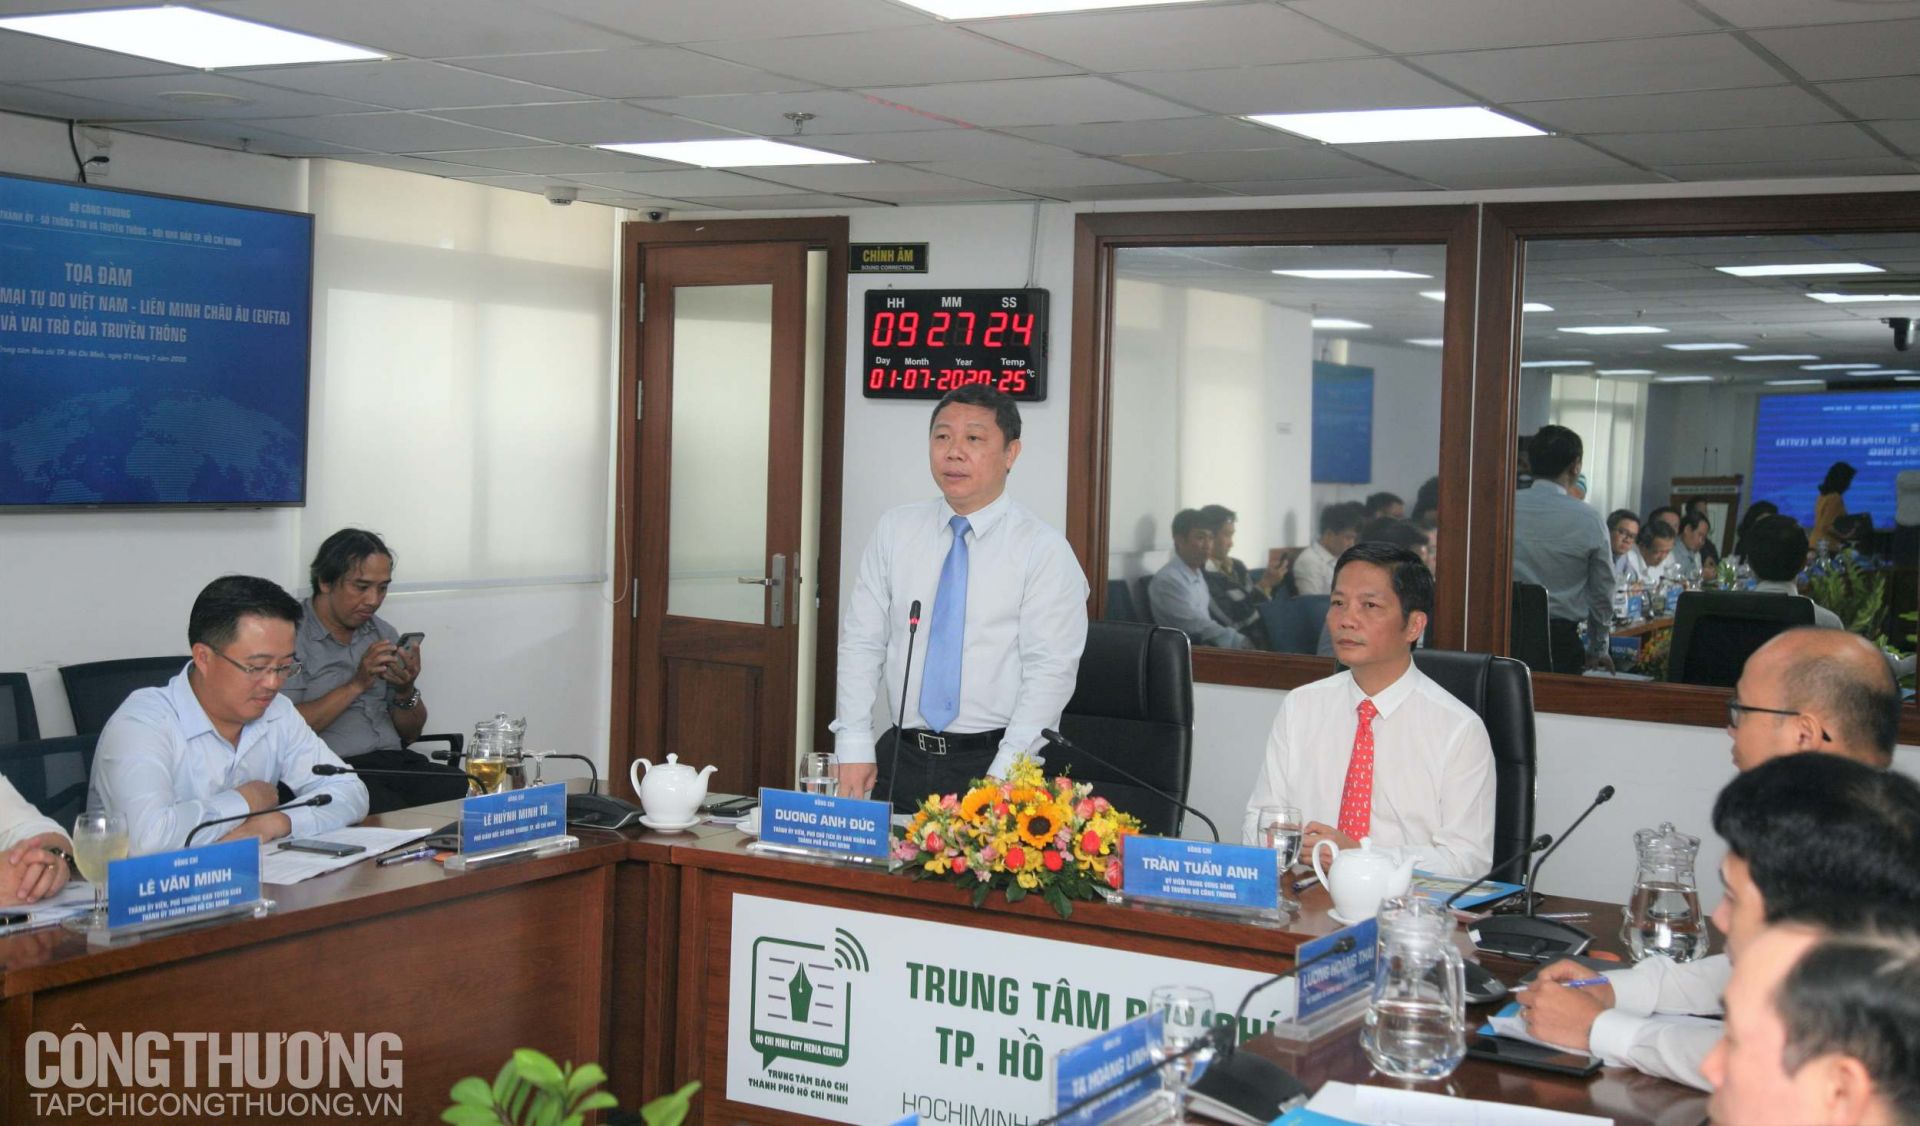 Ông Dương Anh Đức - Phó Chủ tịch UBND TP. Hồ Chí Minh Phát biểu tại buổi tọa đàm